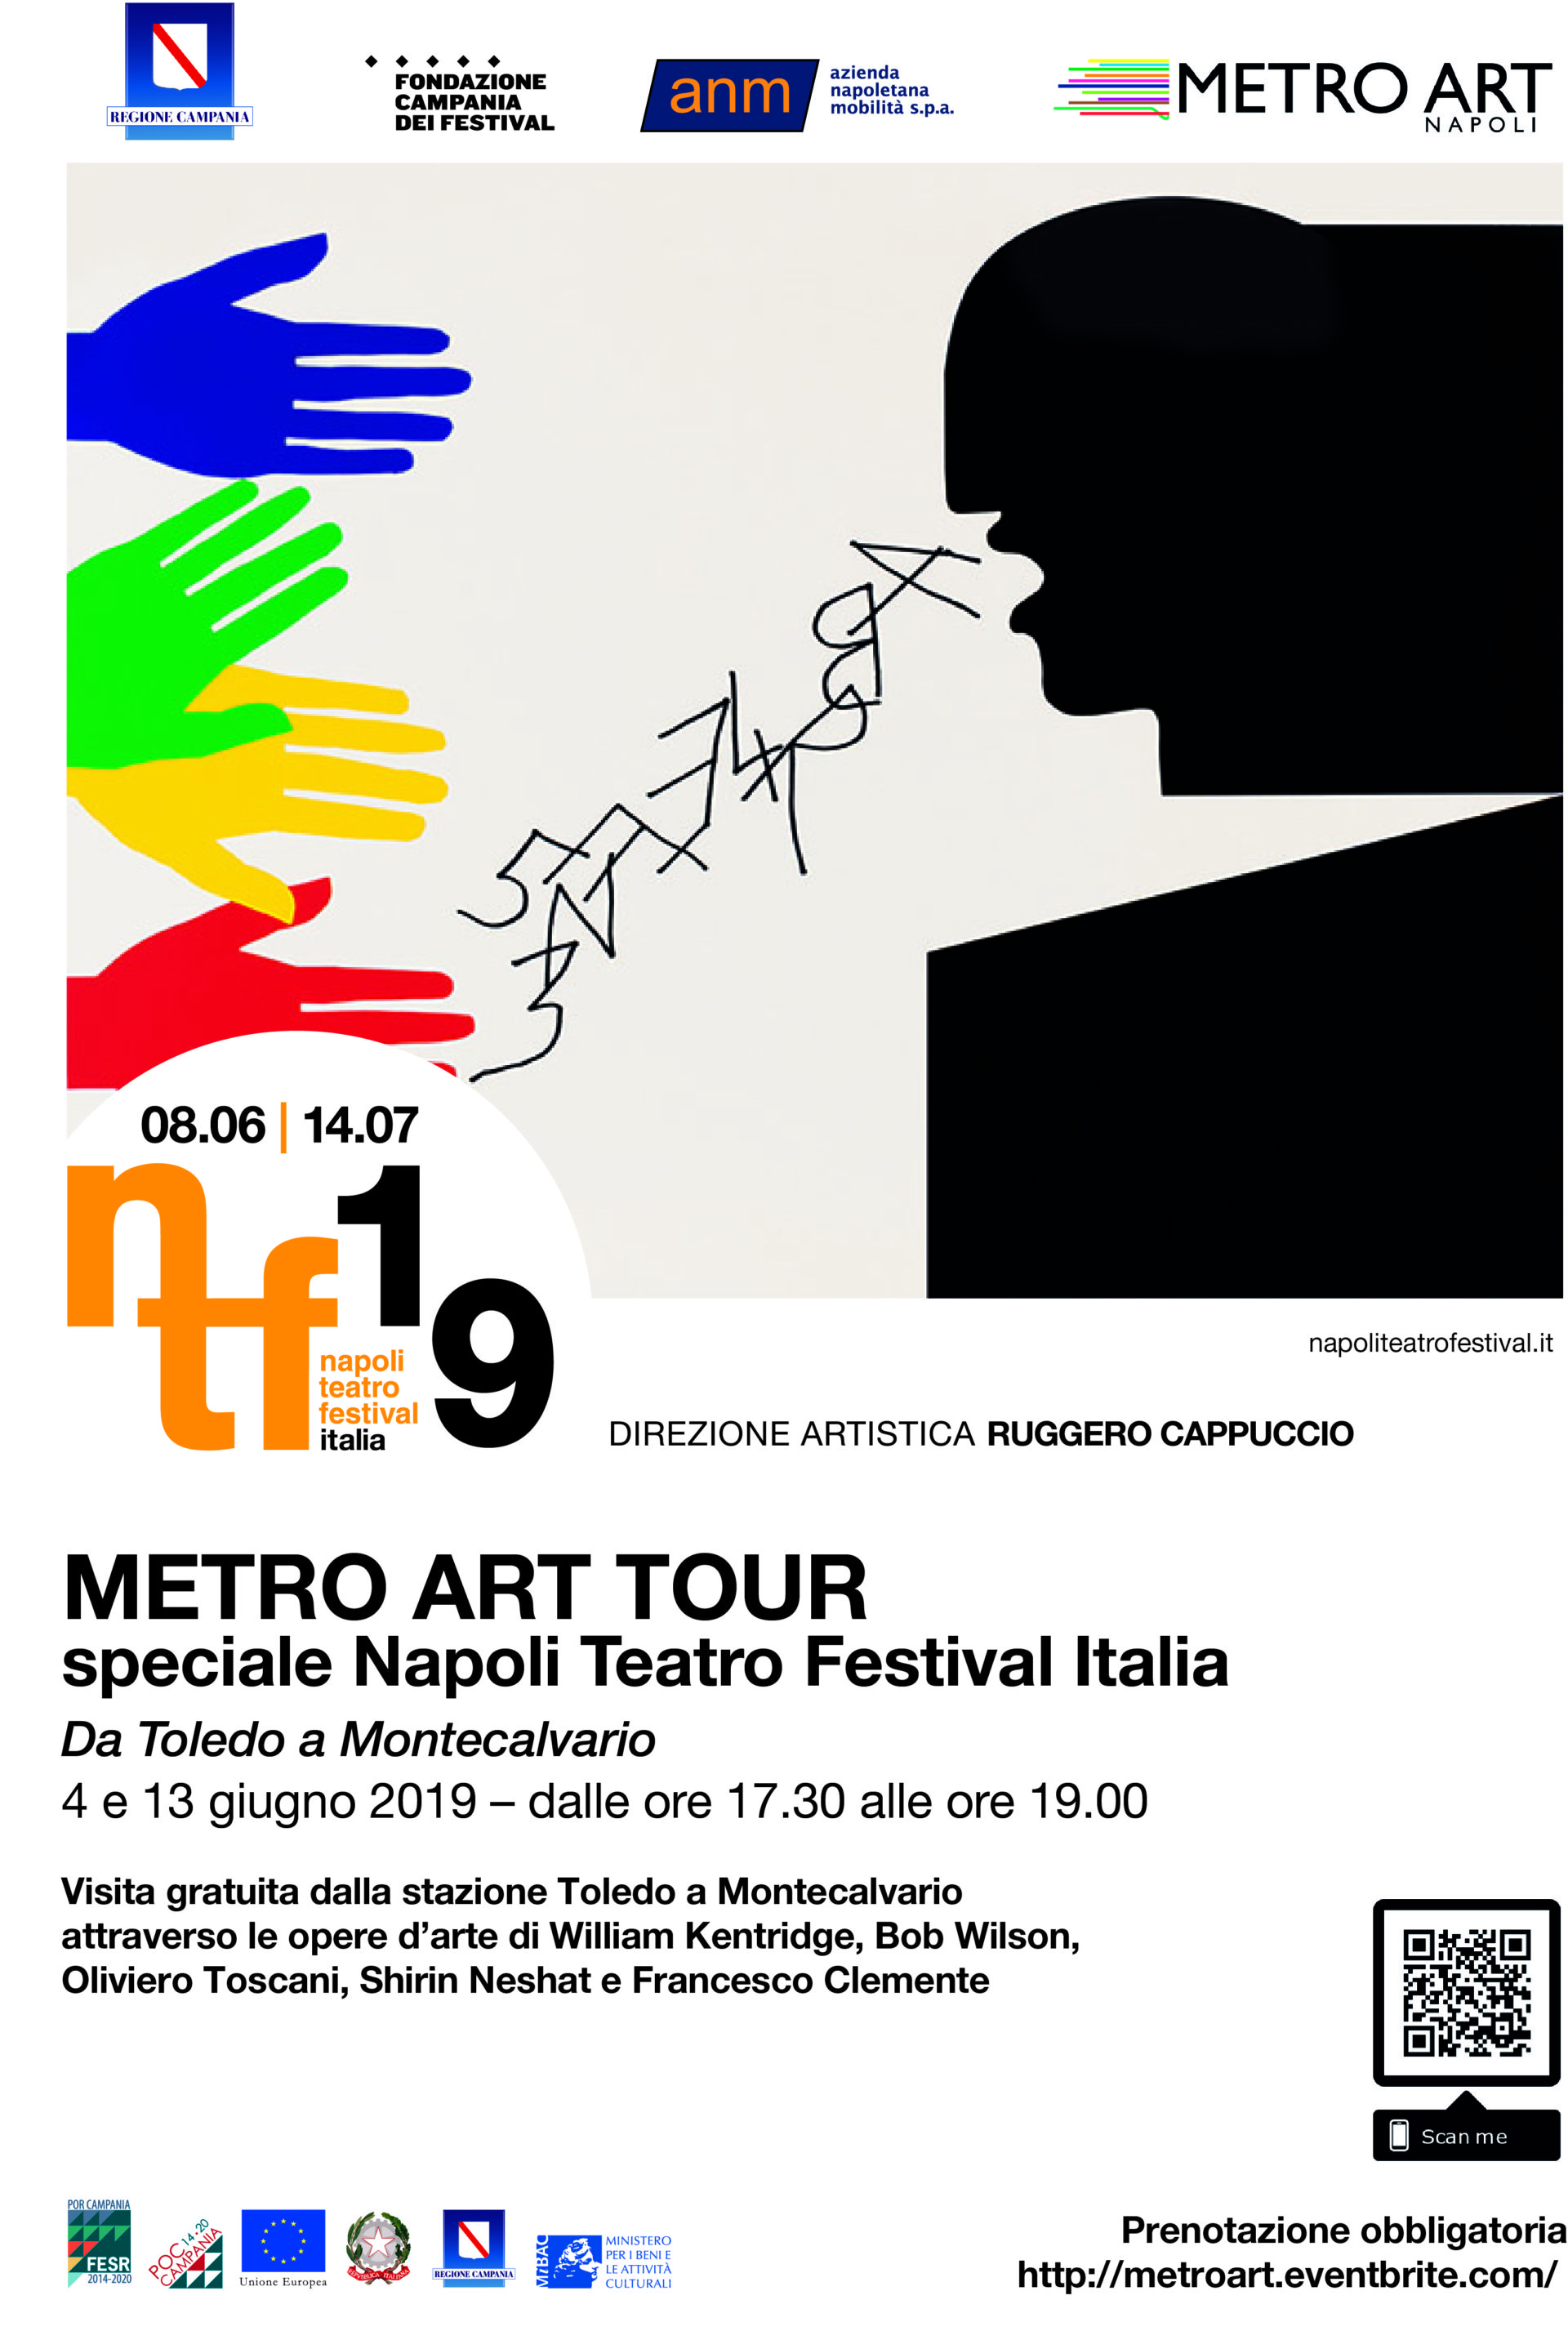 Metro Art Tour ANM speciale Napoli Teatro Festival Italia. Come prenotarsi